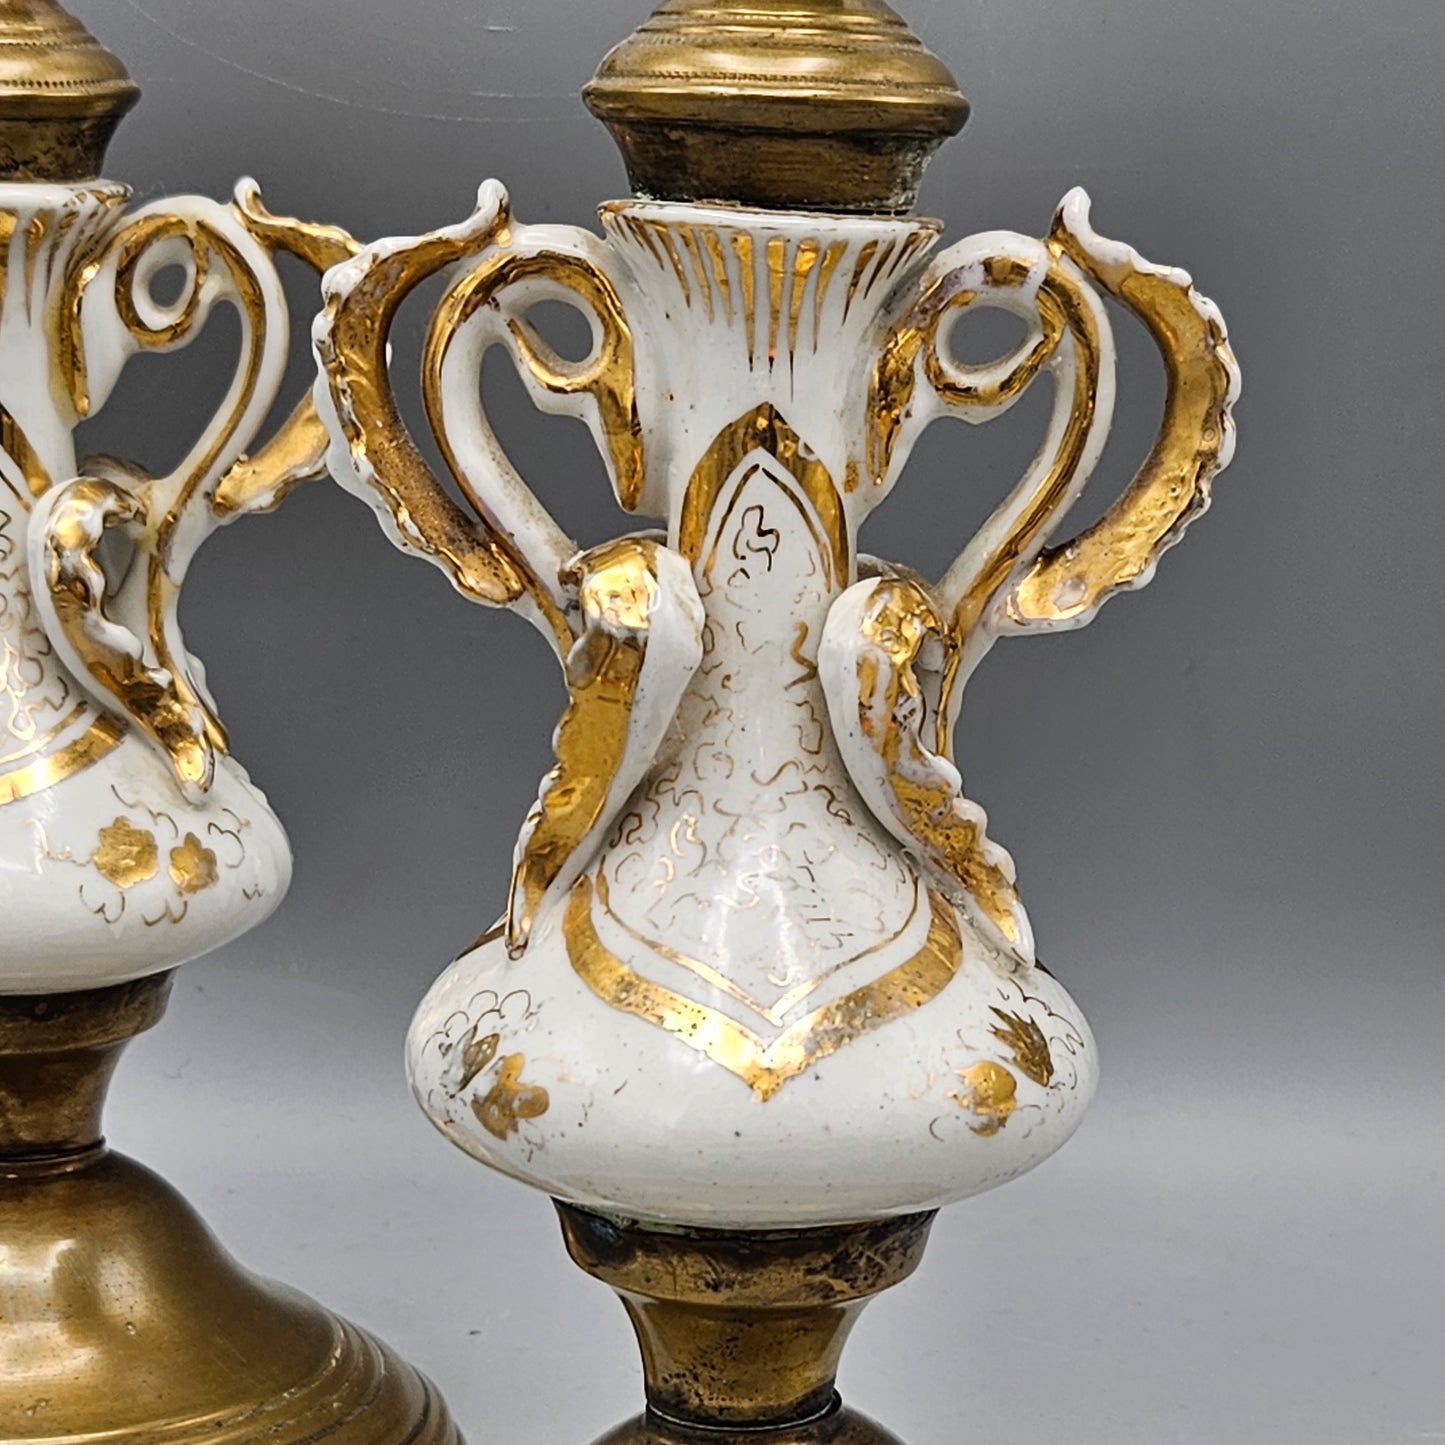 Vintage Brass and Porcelain Candlesticks